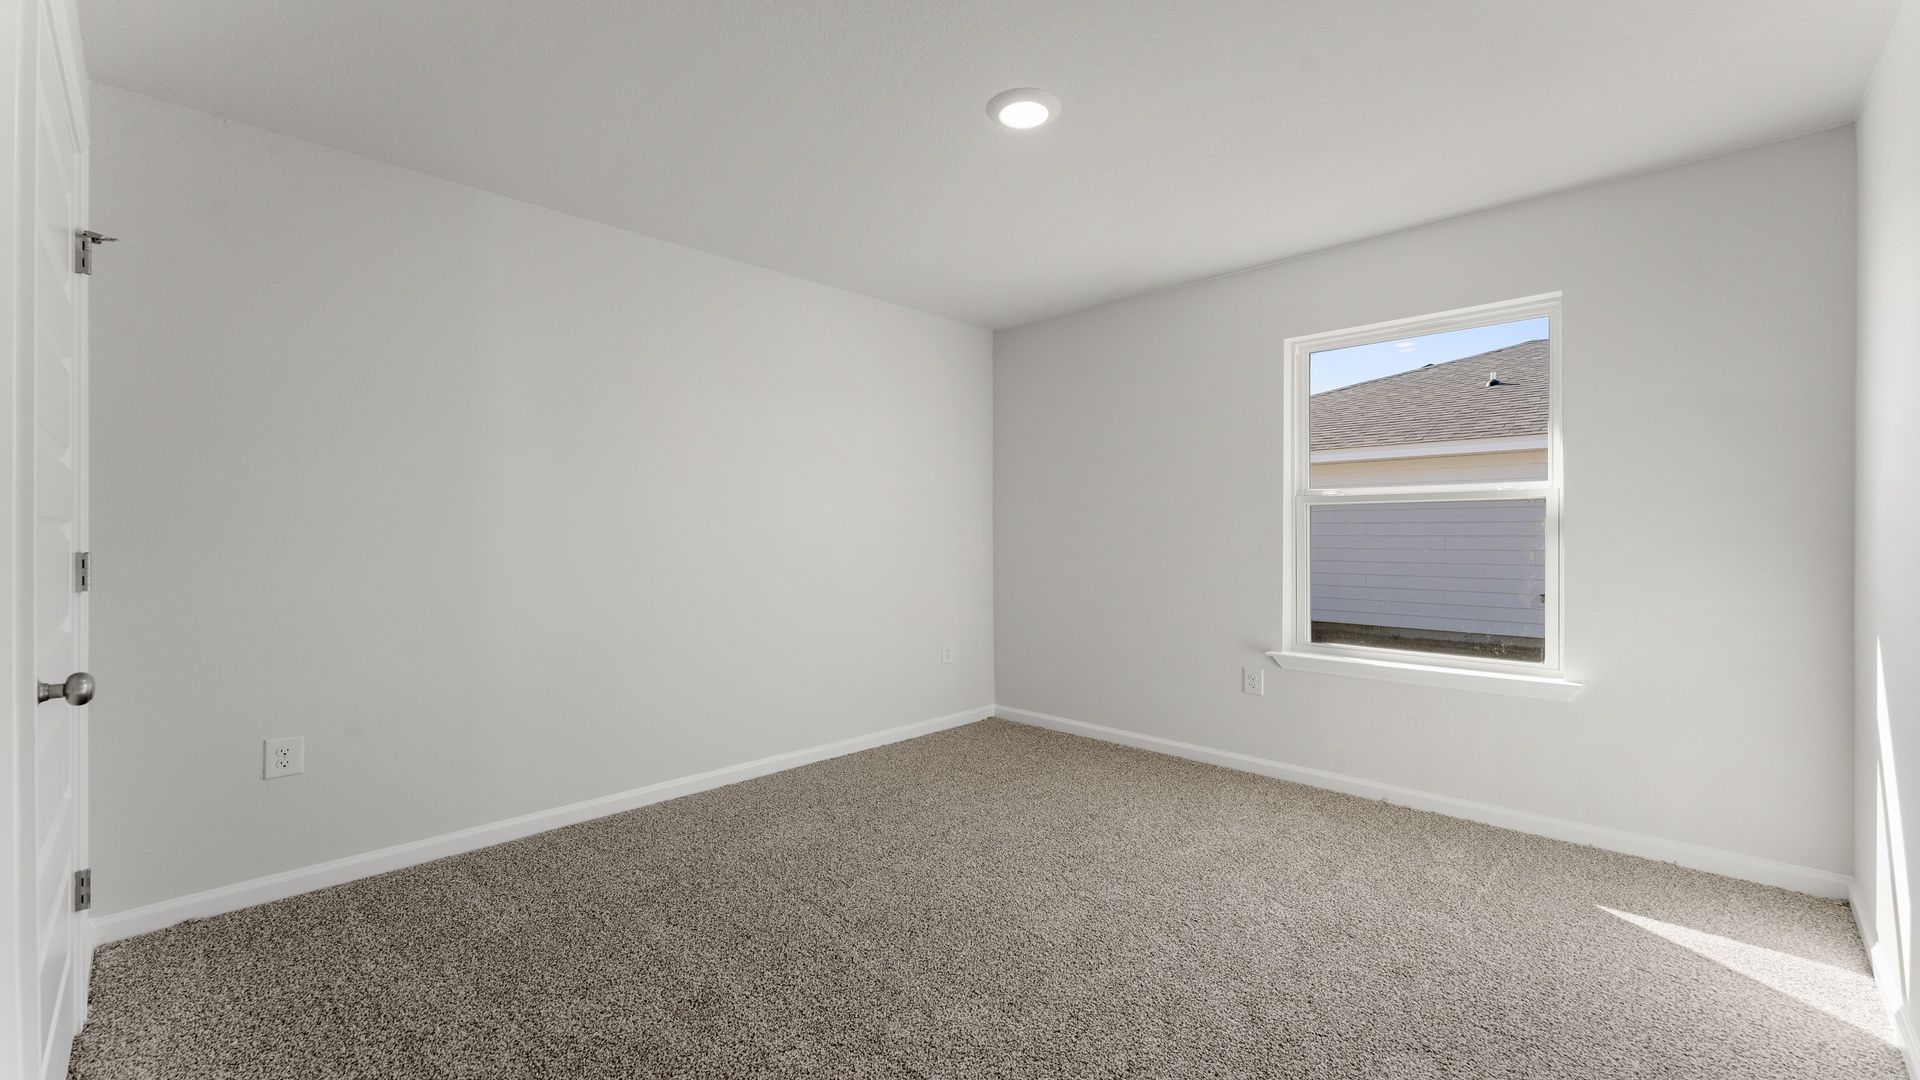 Bedroom with carpet floor and window.